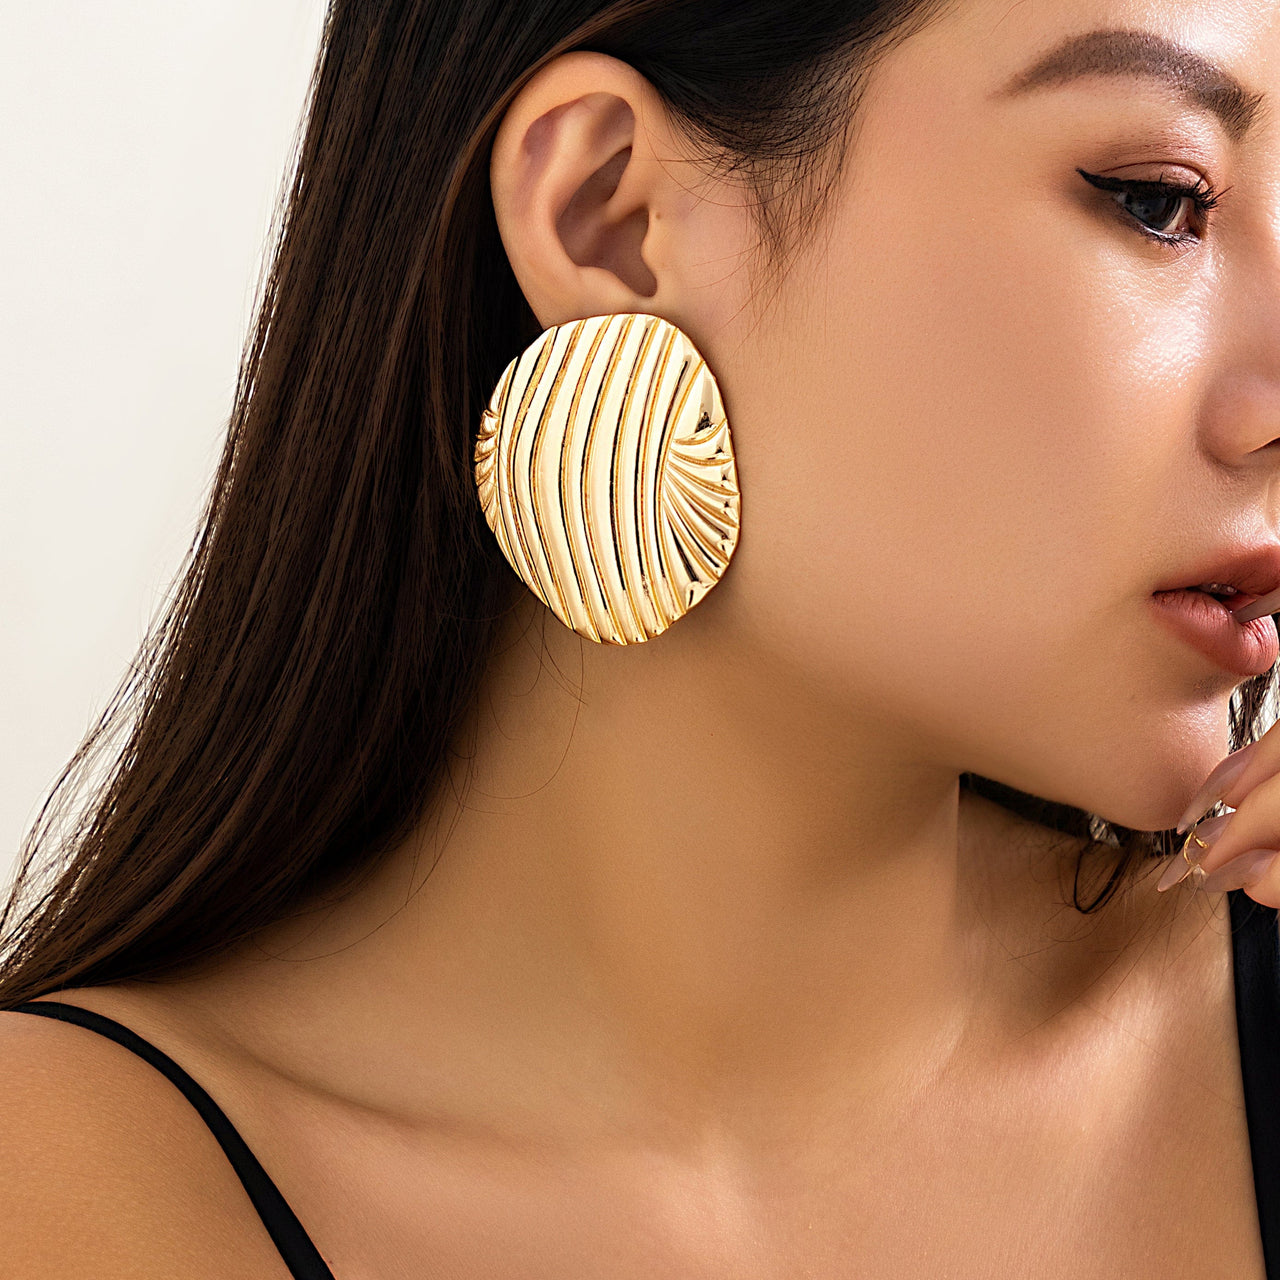 Ocean Style Gold Silver Plated Shell Earrings - ArtGalleryZen